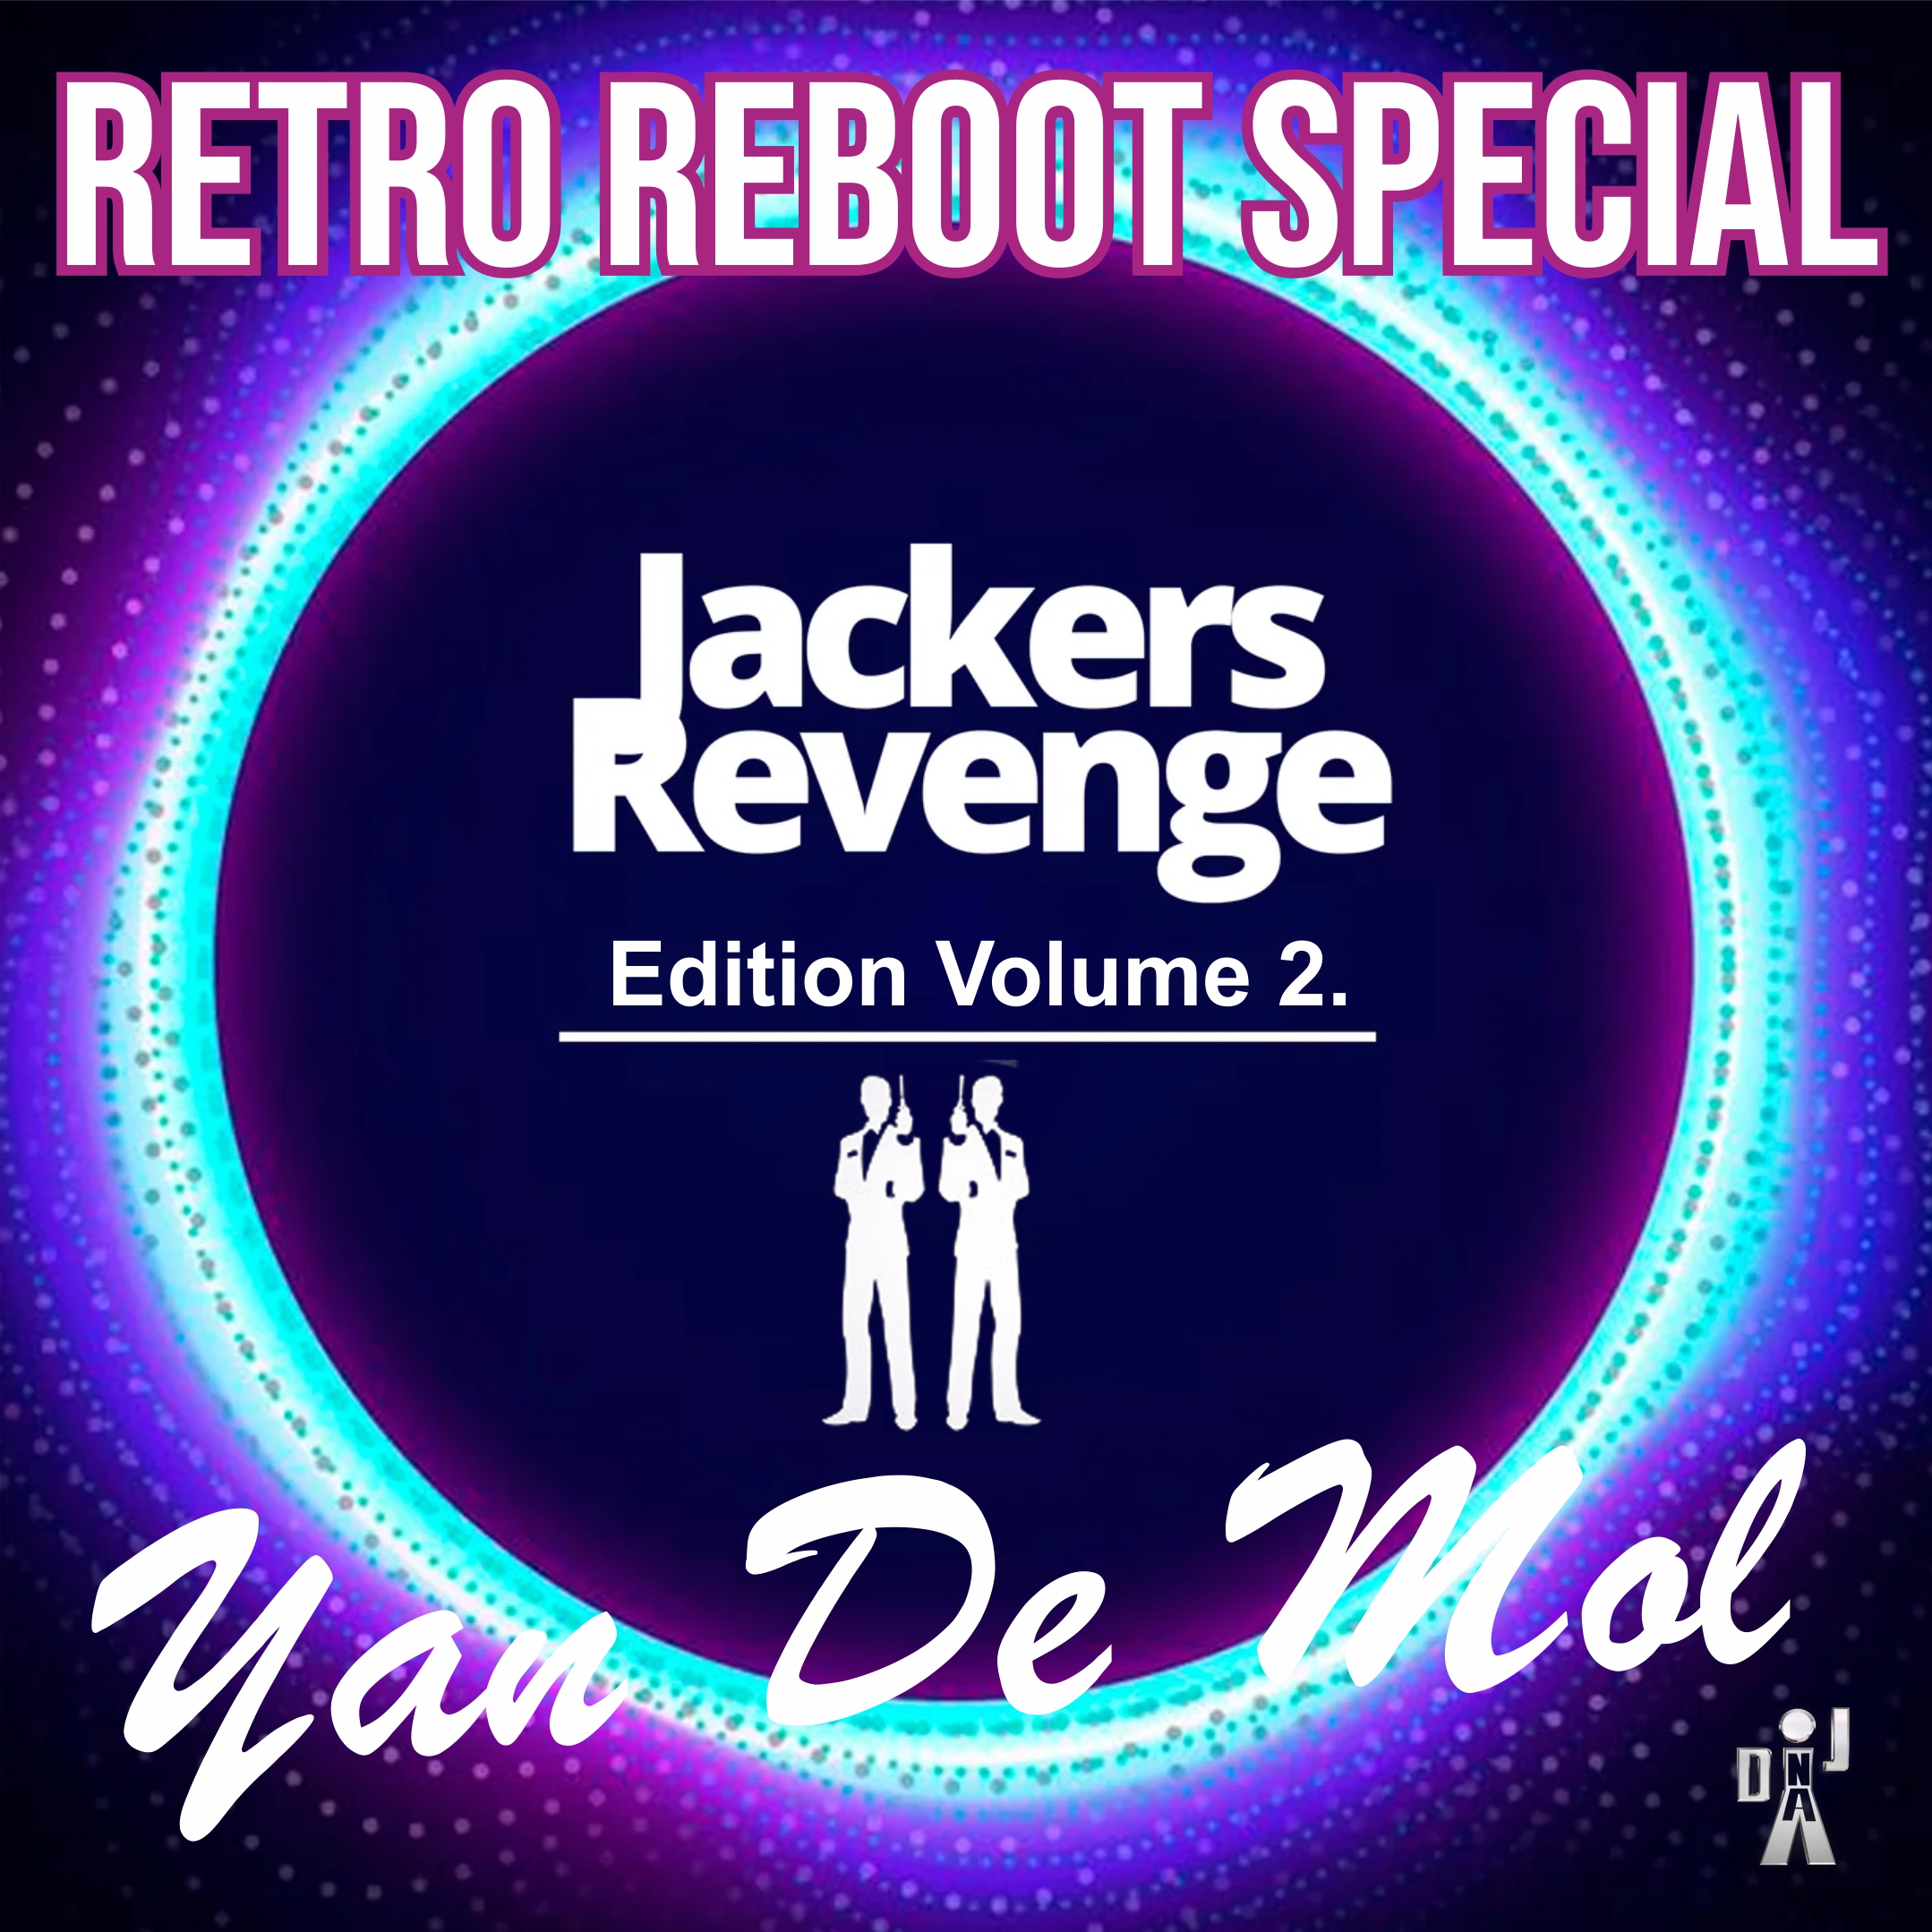 Yan De Mol - Retro Reboot Special (Jackers Revenge Edition 2.) MTIwNzQ4MQ